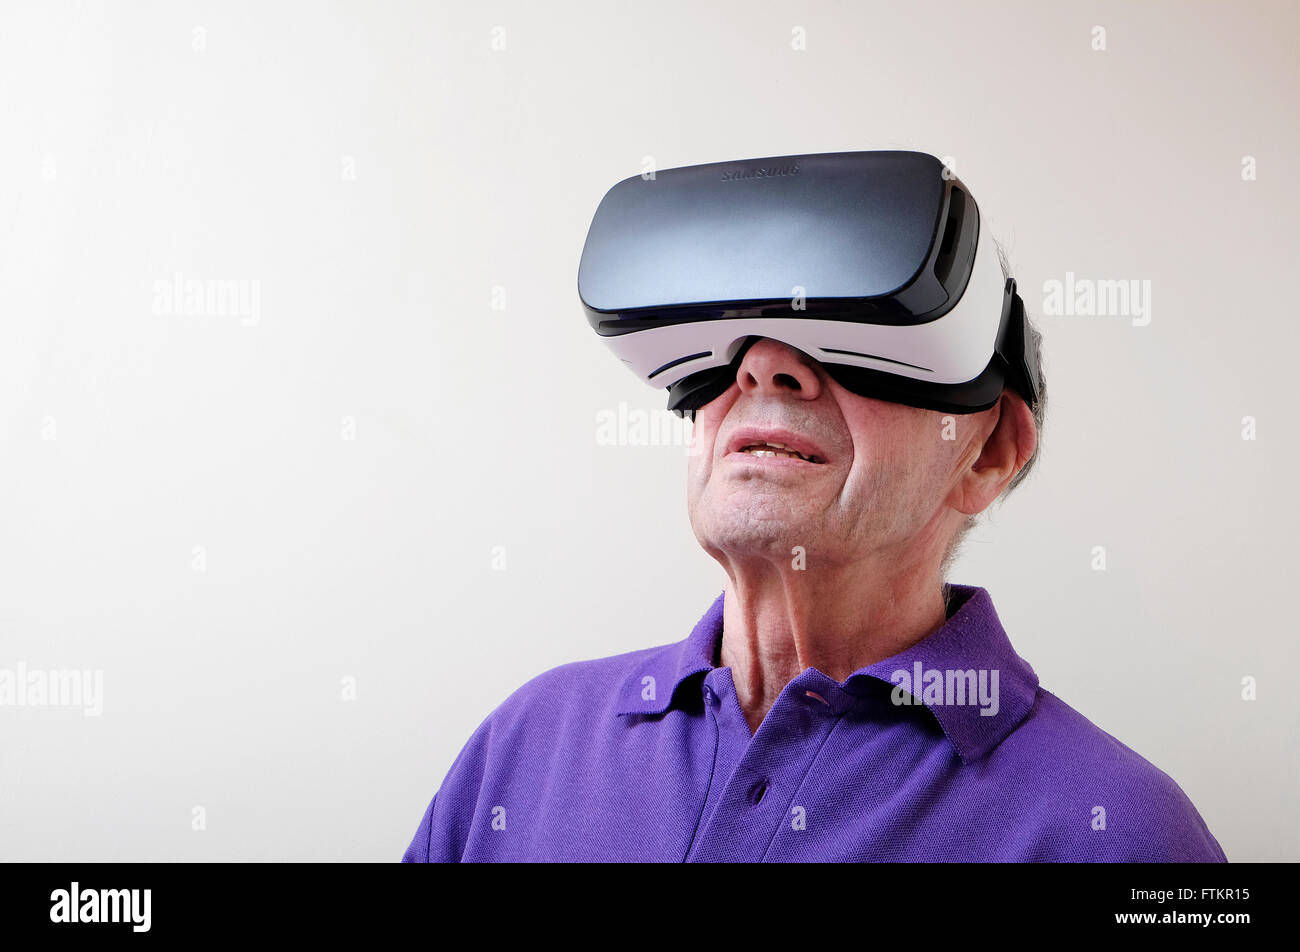 Casque de réalité virtuelle portés par man Banque D'Images